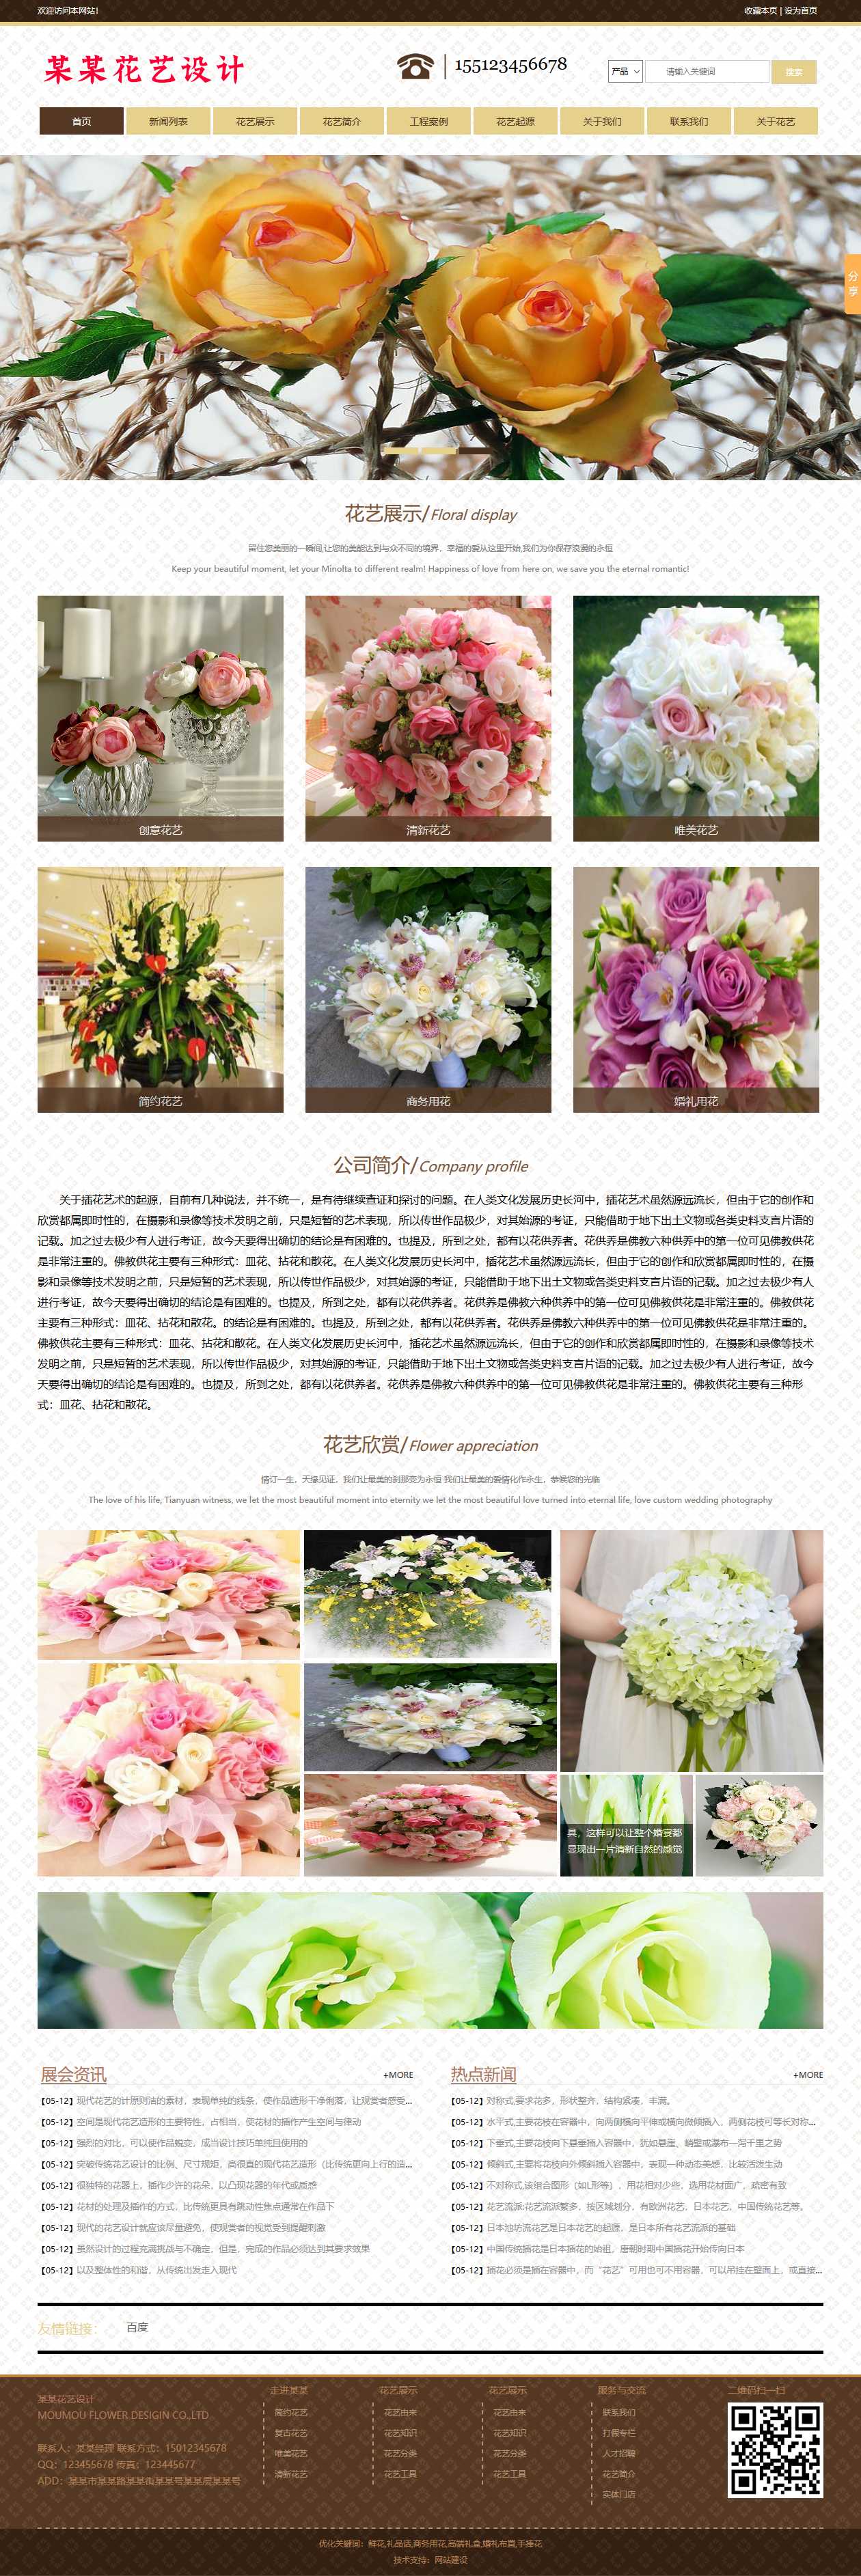 花卉、鲜花网站首页效果图